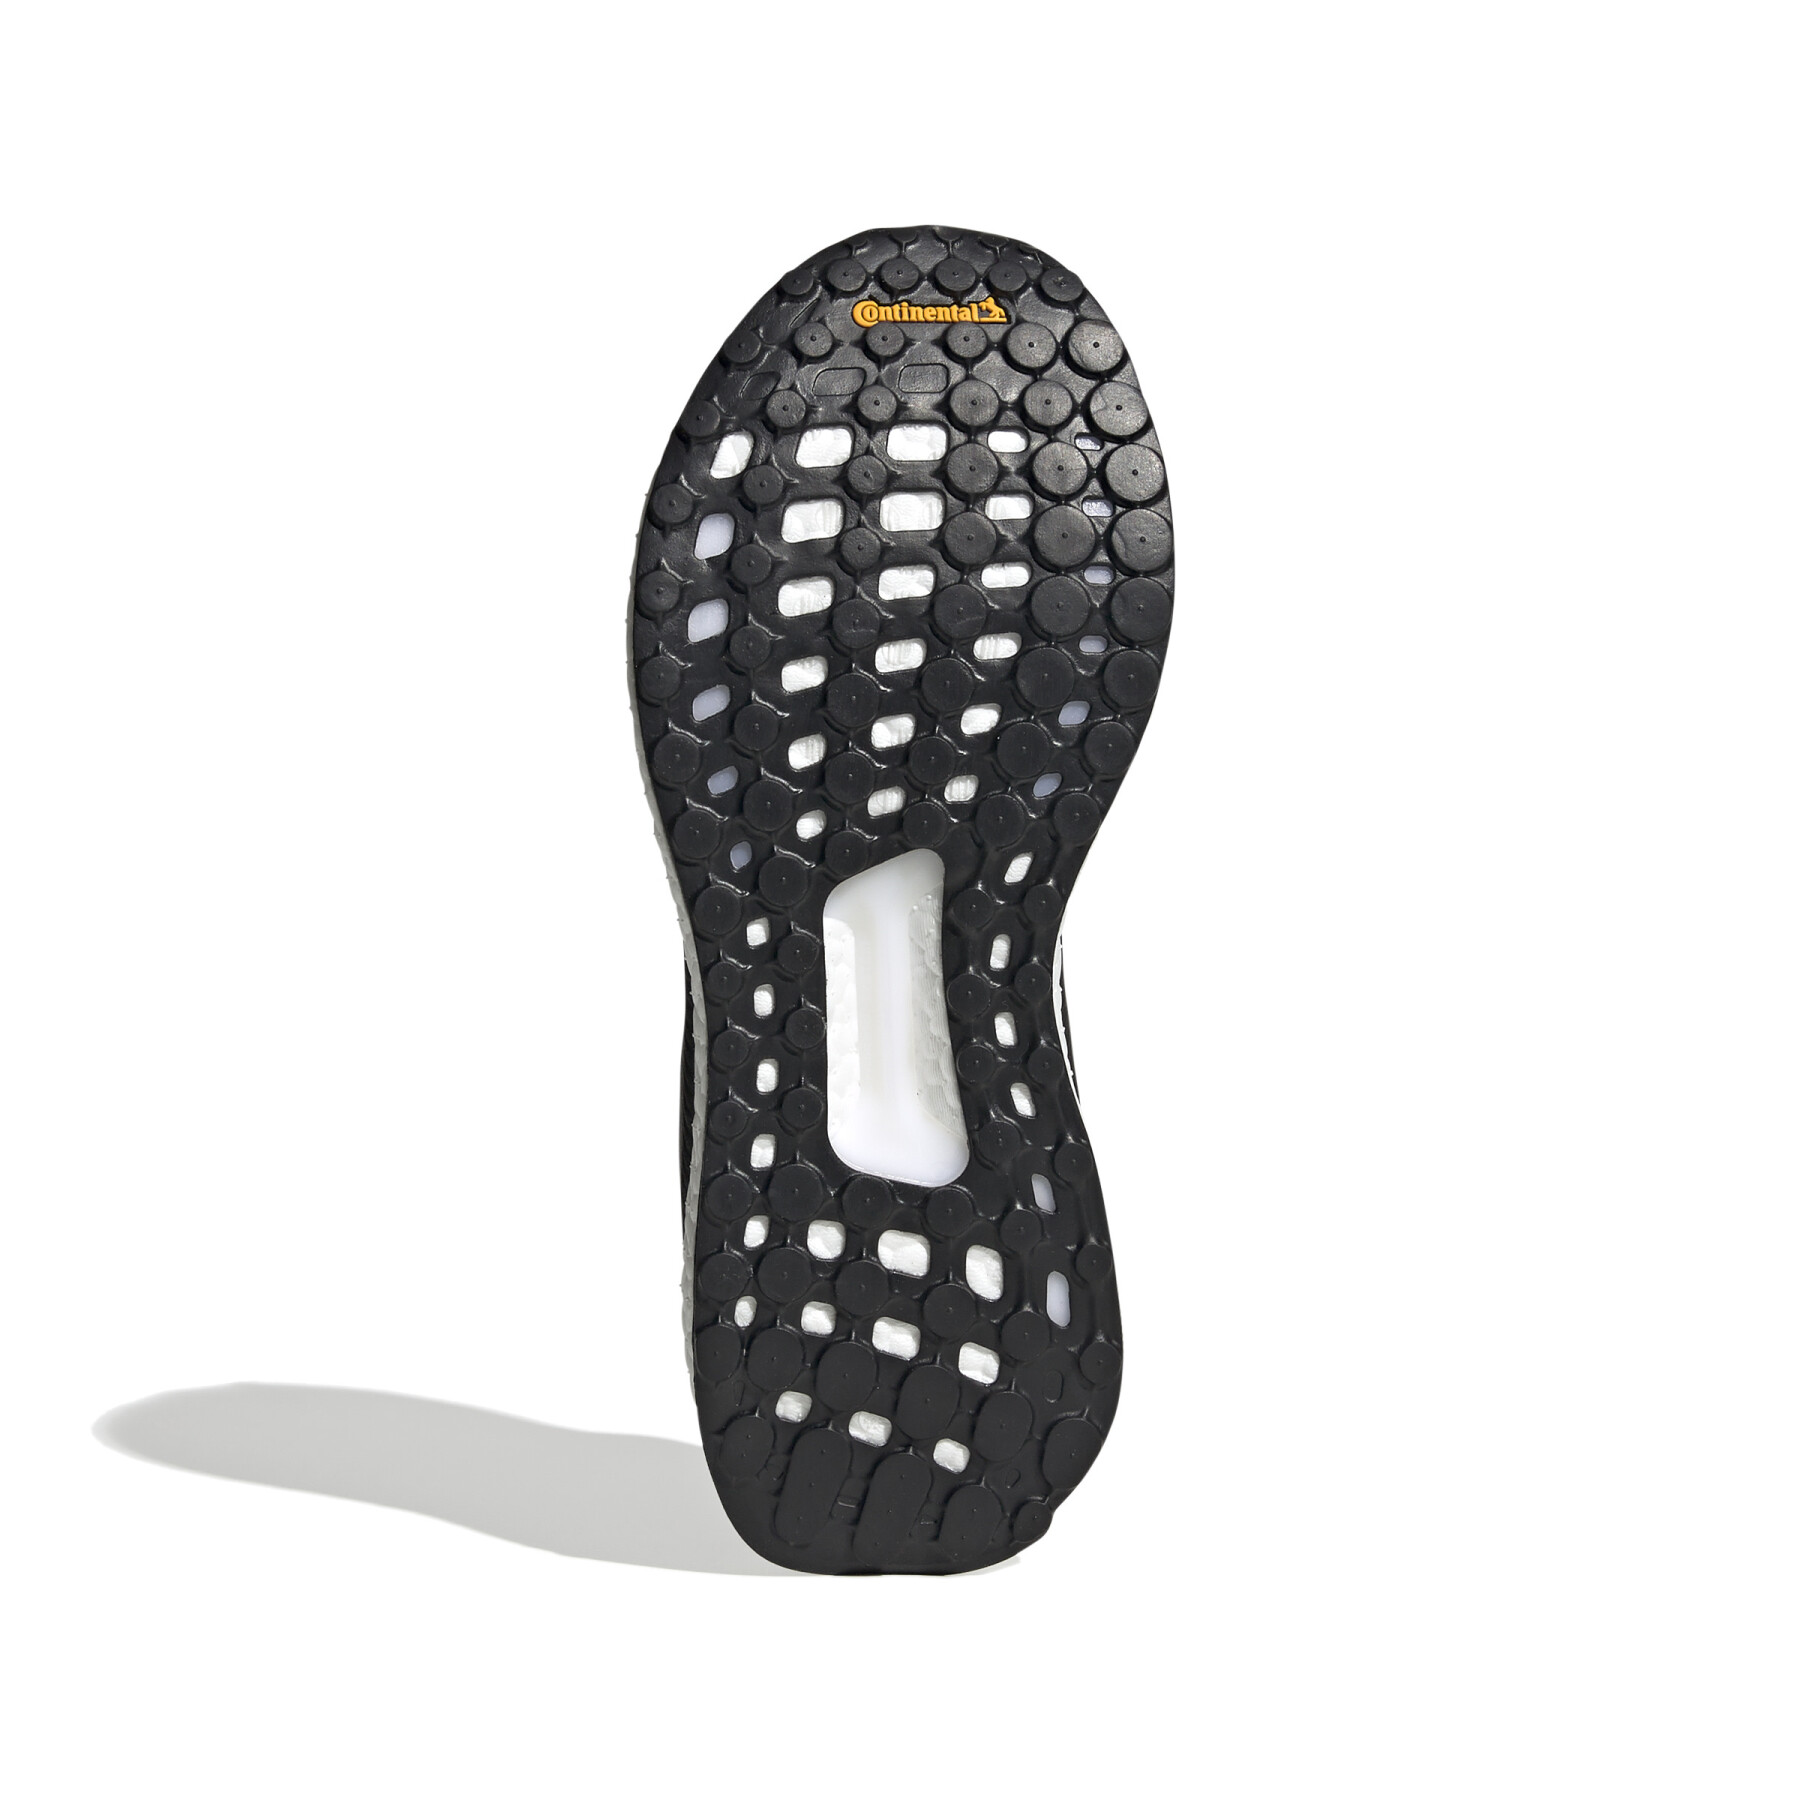 Laufschuhe für Frauen adidas Solarboost 19